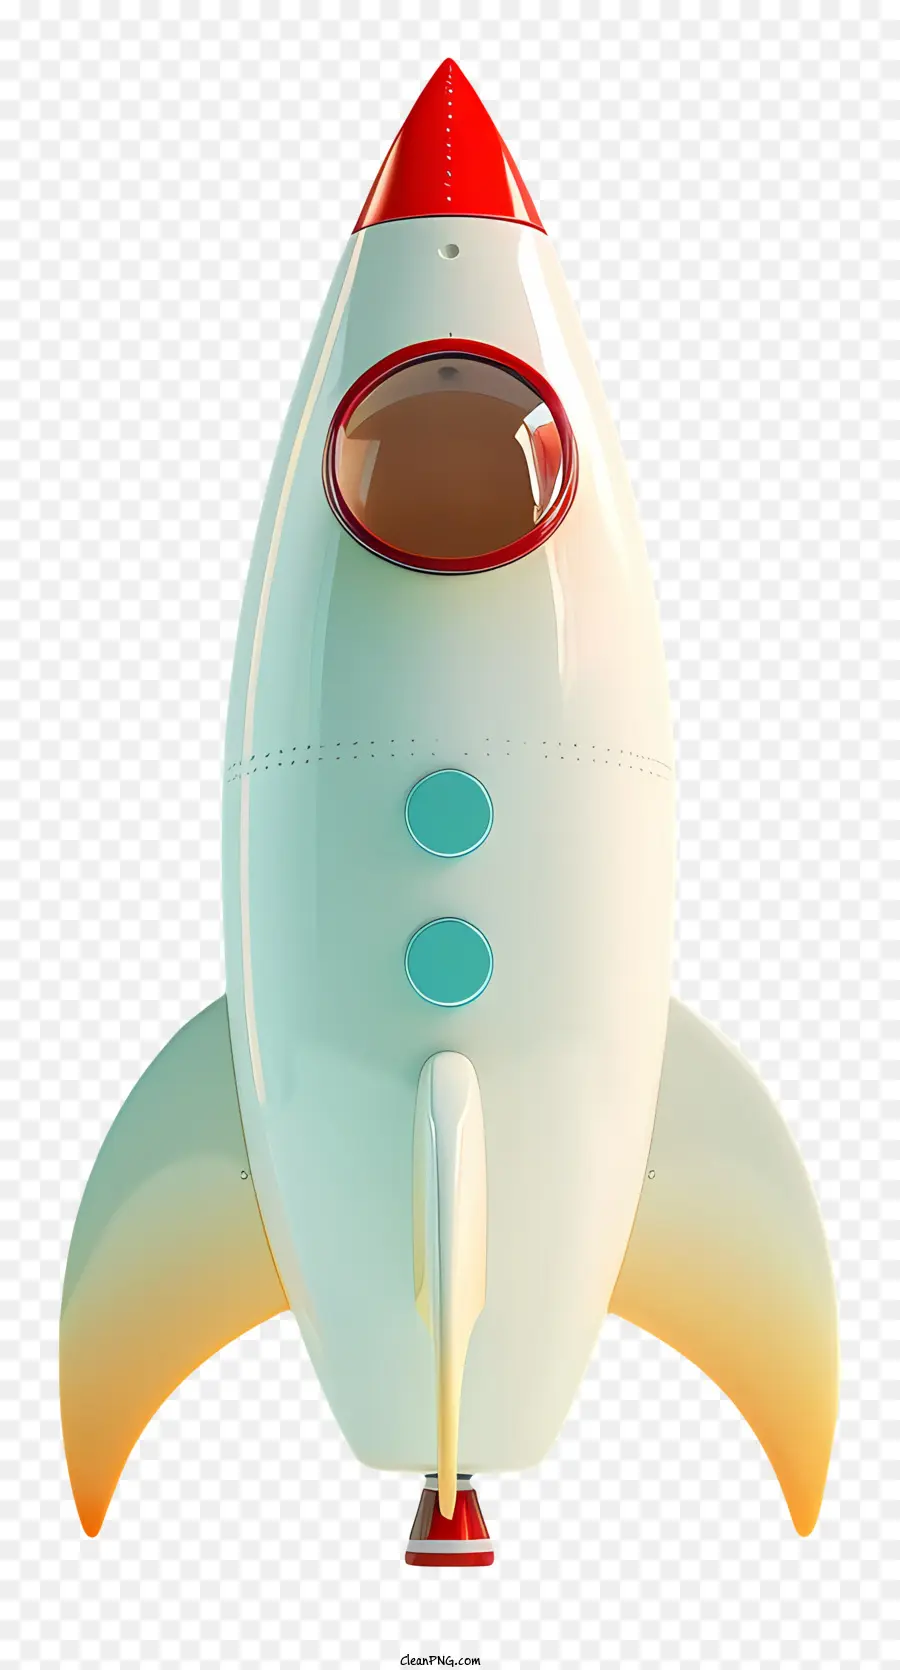 Rocket Rocket White Stripe - Piccolo razzo bianco con striscia rossa e finestra